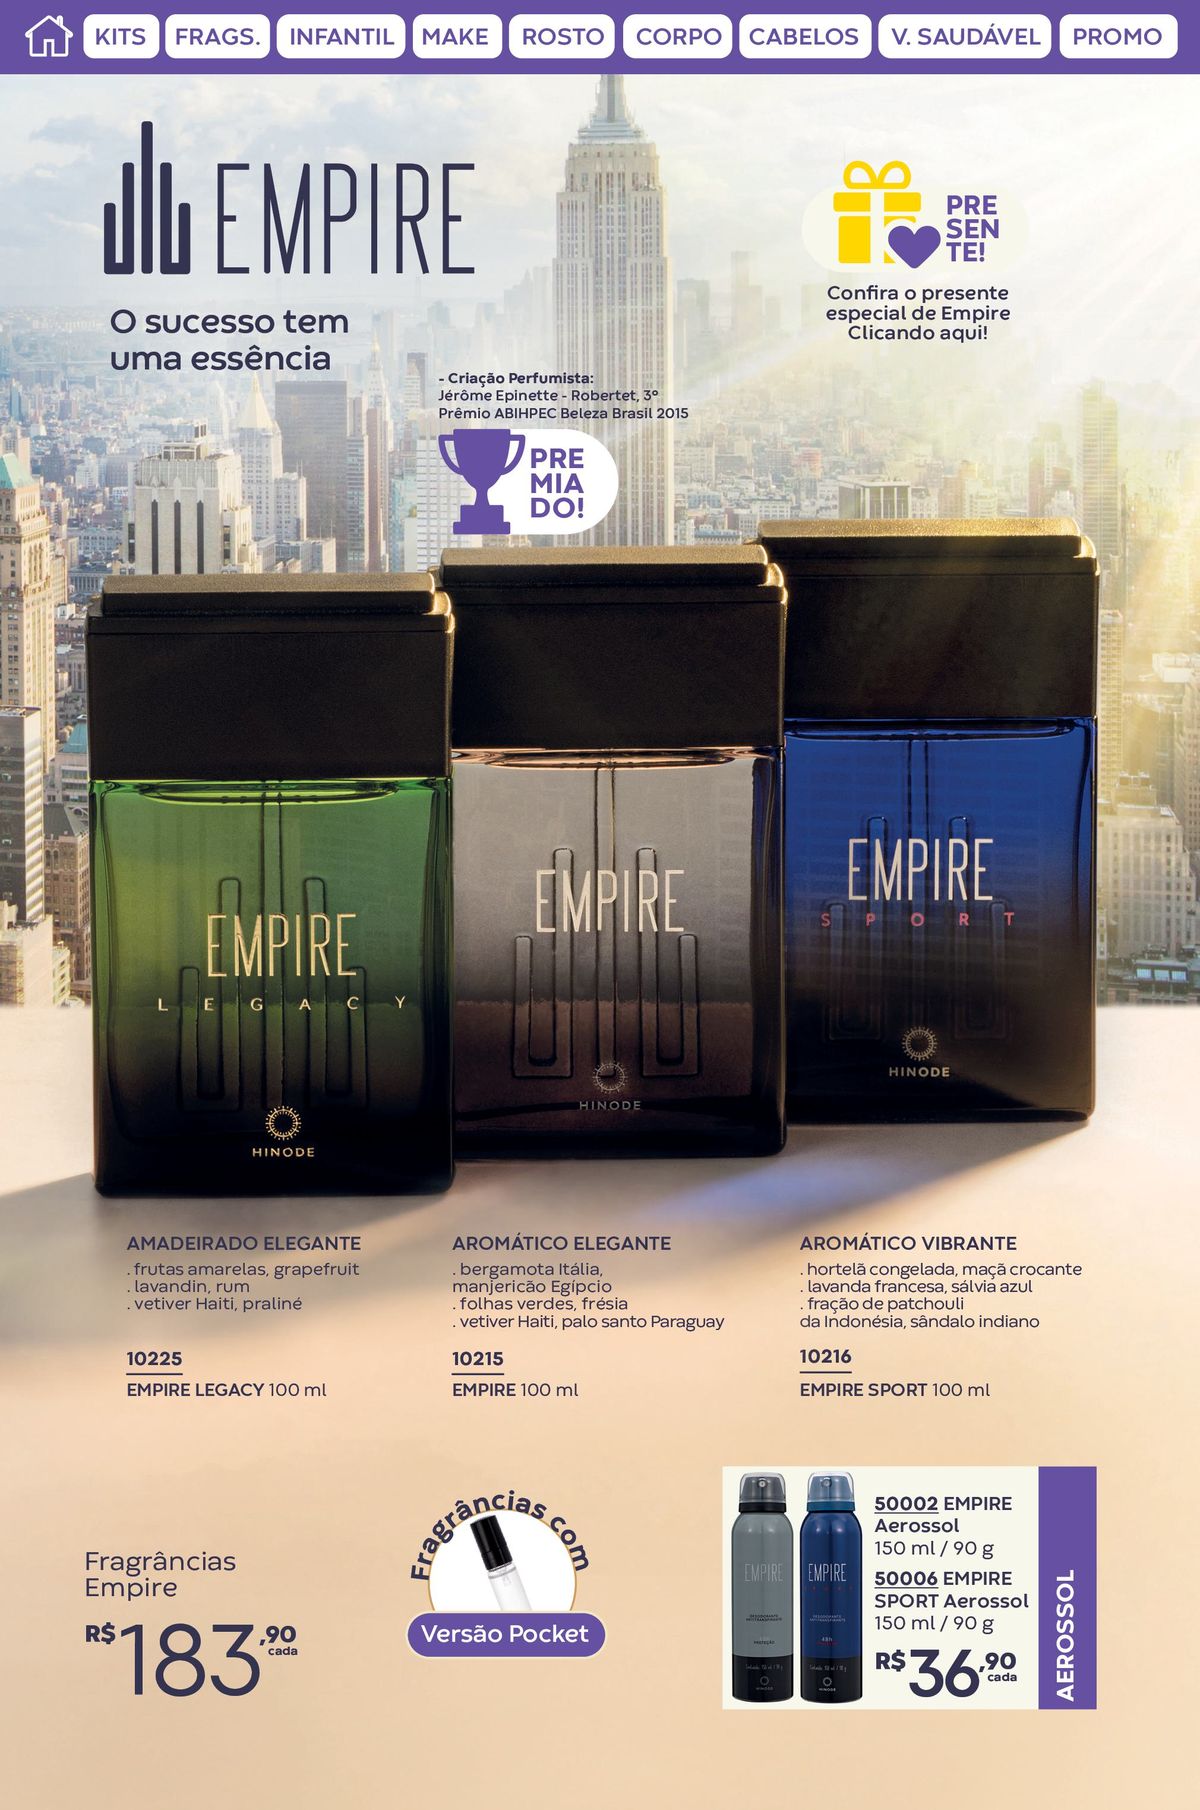 Perfumes Empire - Todas as Variedades Incluídas!